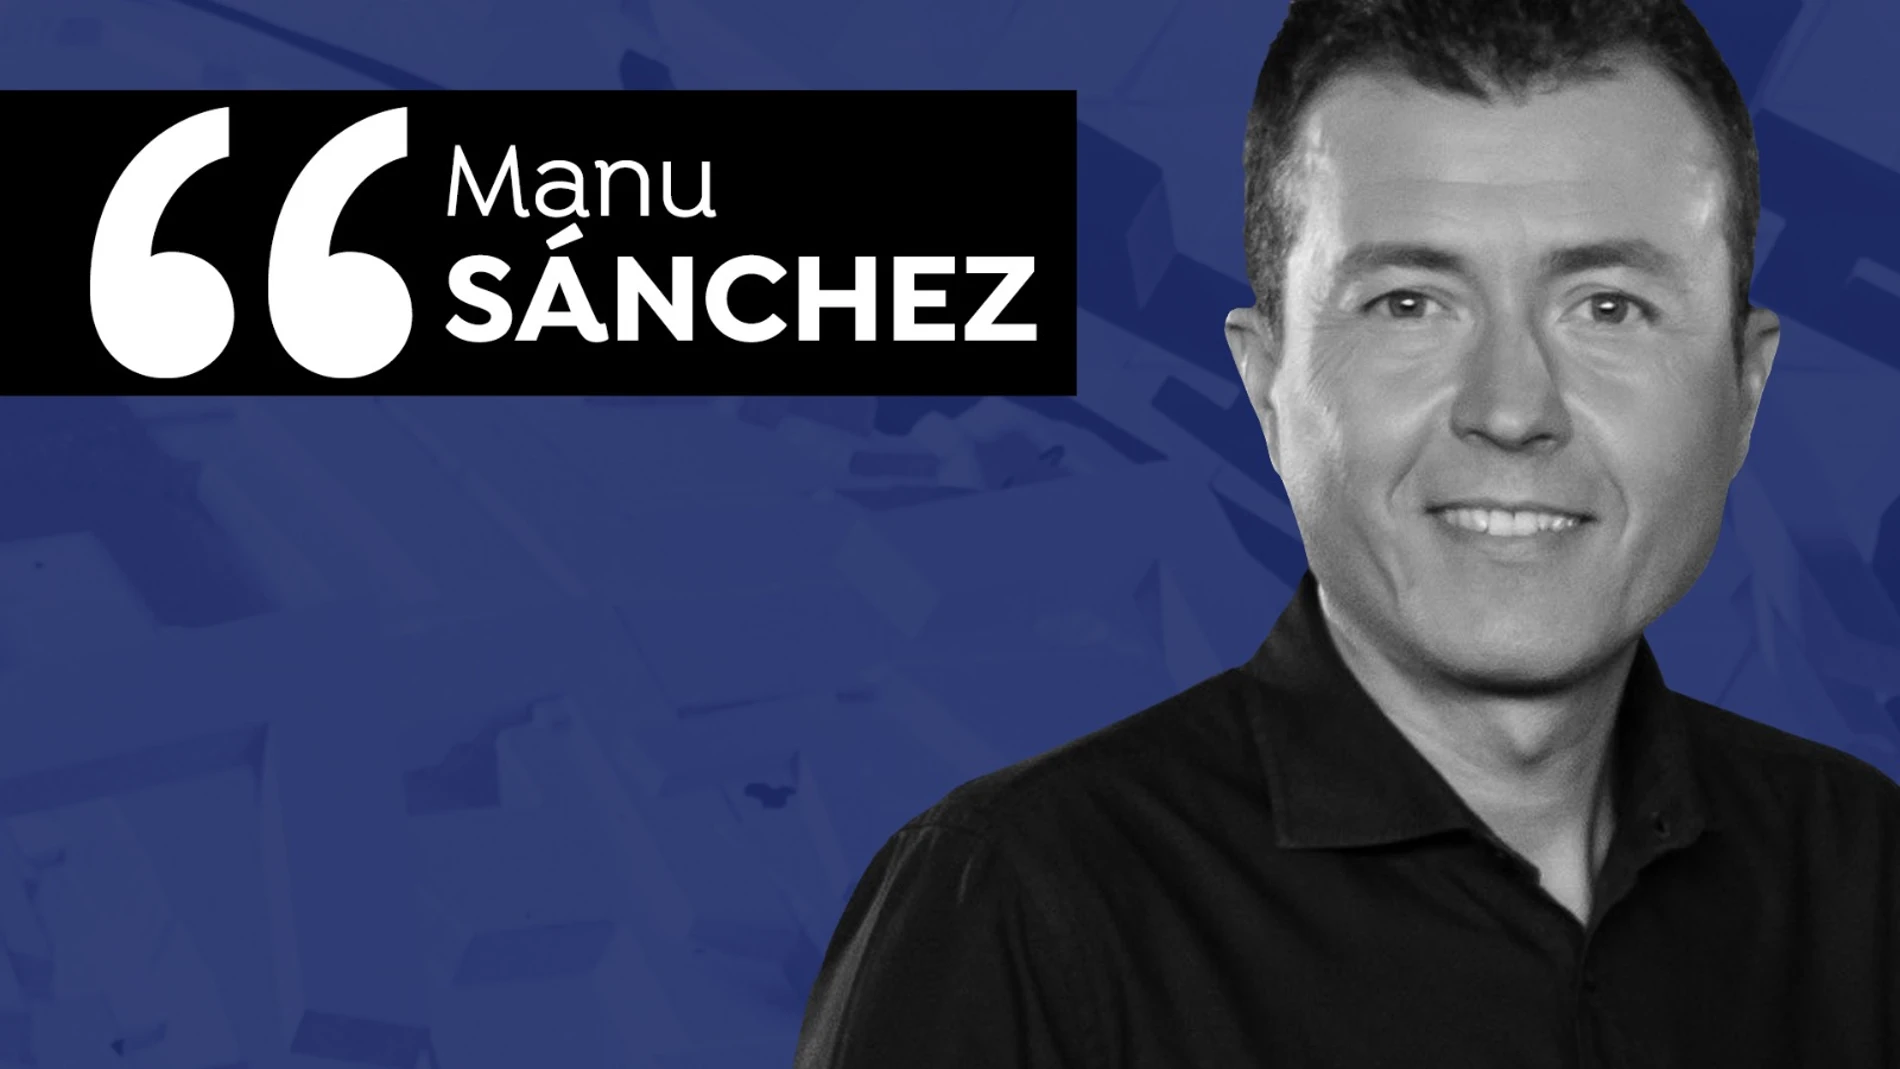 Manu Sánchez, sobre los no vacunados: ¿qué es primero la libertad individual o la salud de todos?